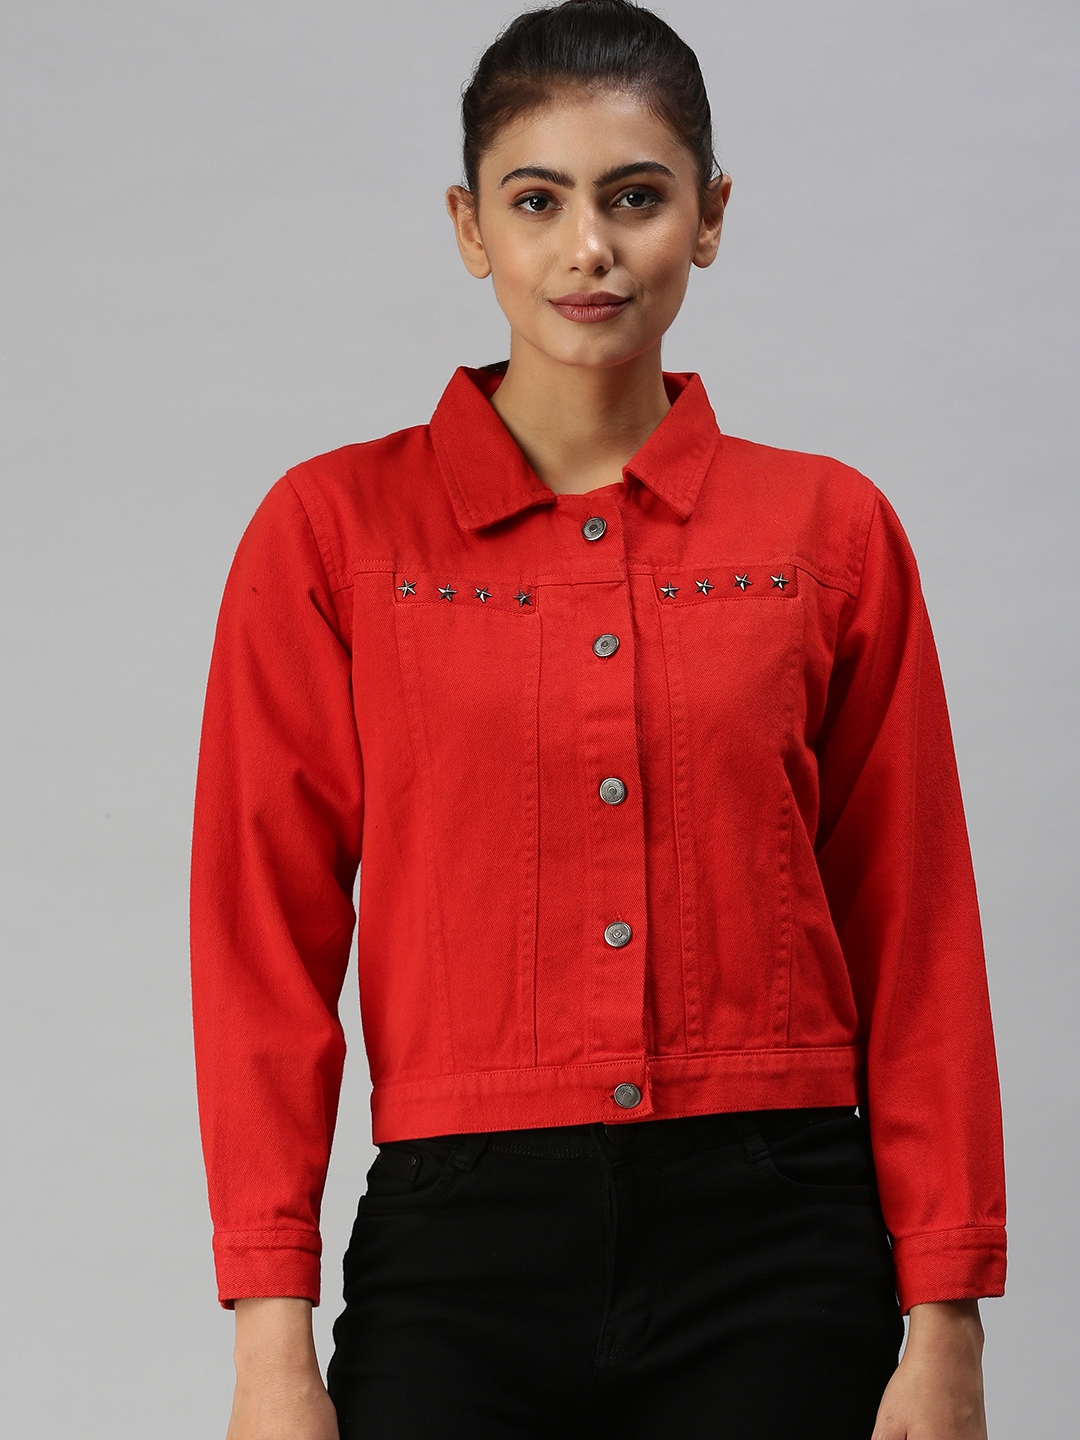 Women's Red Denim Solid Denim Jackets